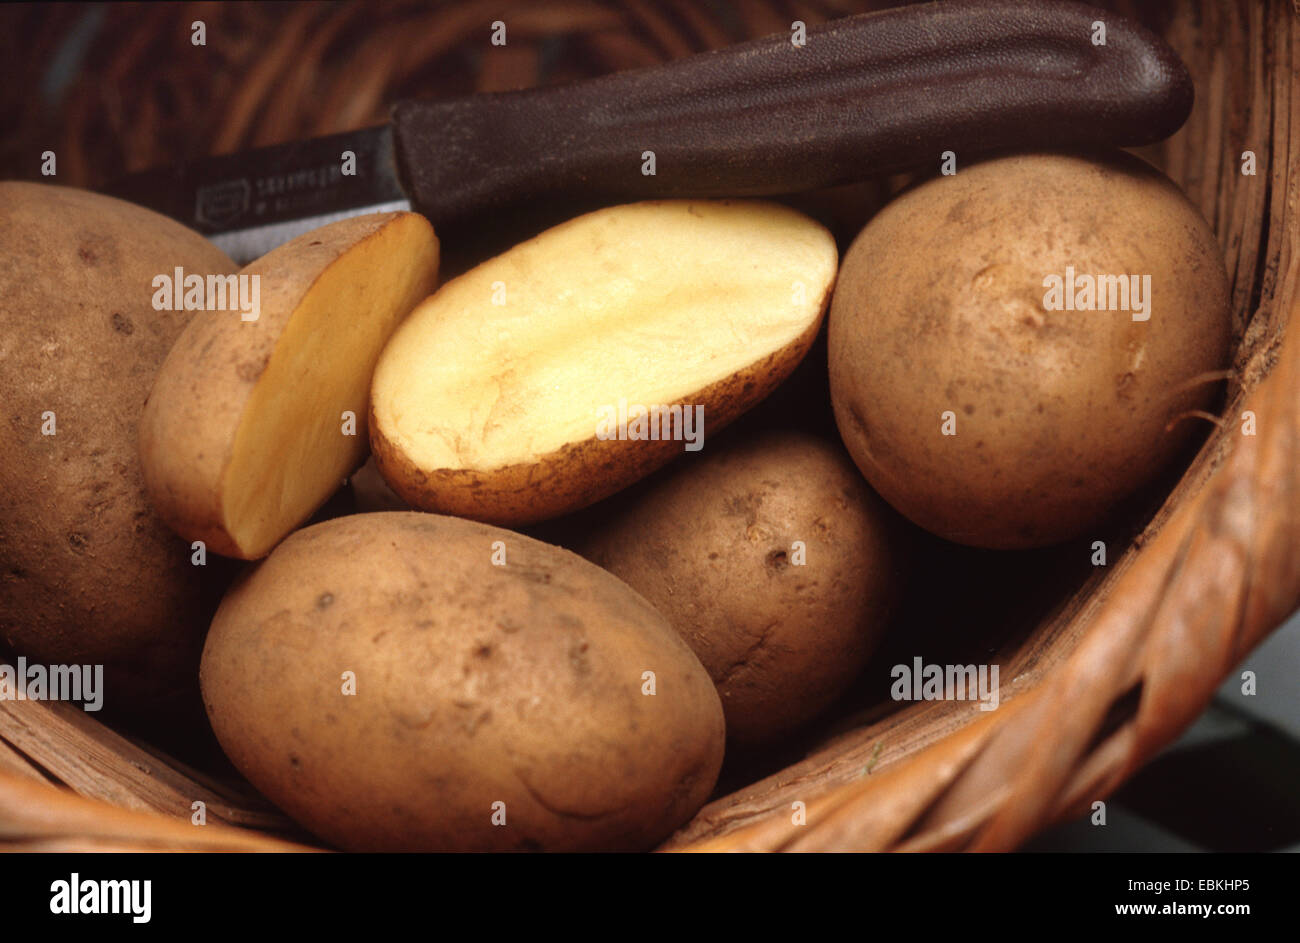 potato (Solanum tuberosum 'Belana', Solanum tuberosum Belana), cultivar Belana, waxy potato, in a baslet Stock Photo